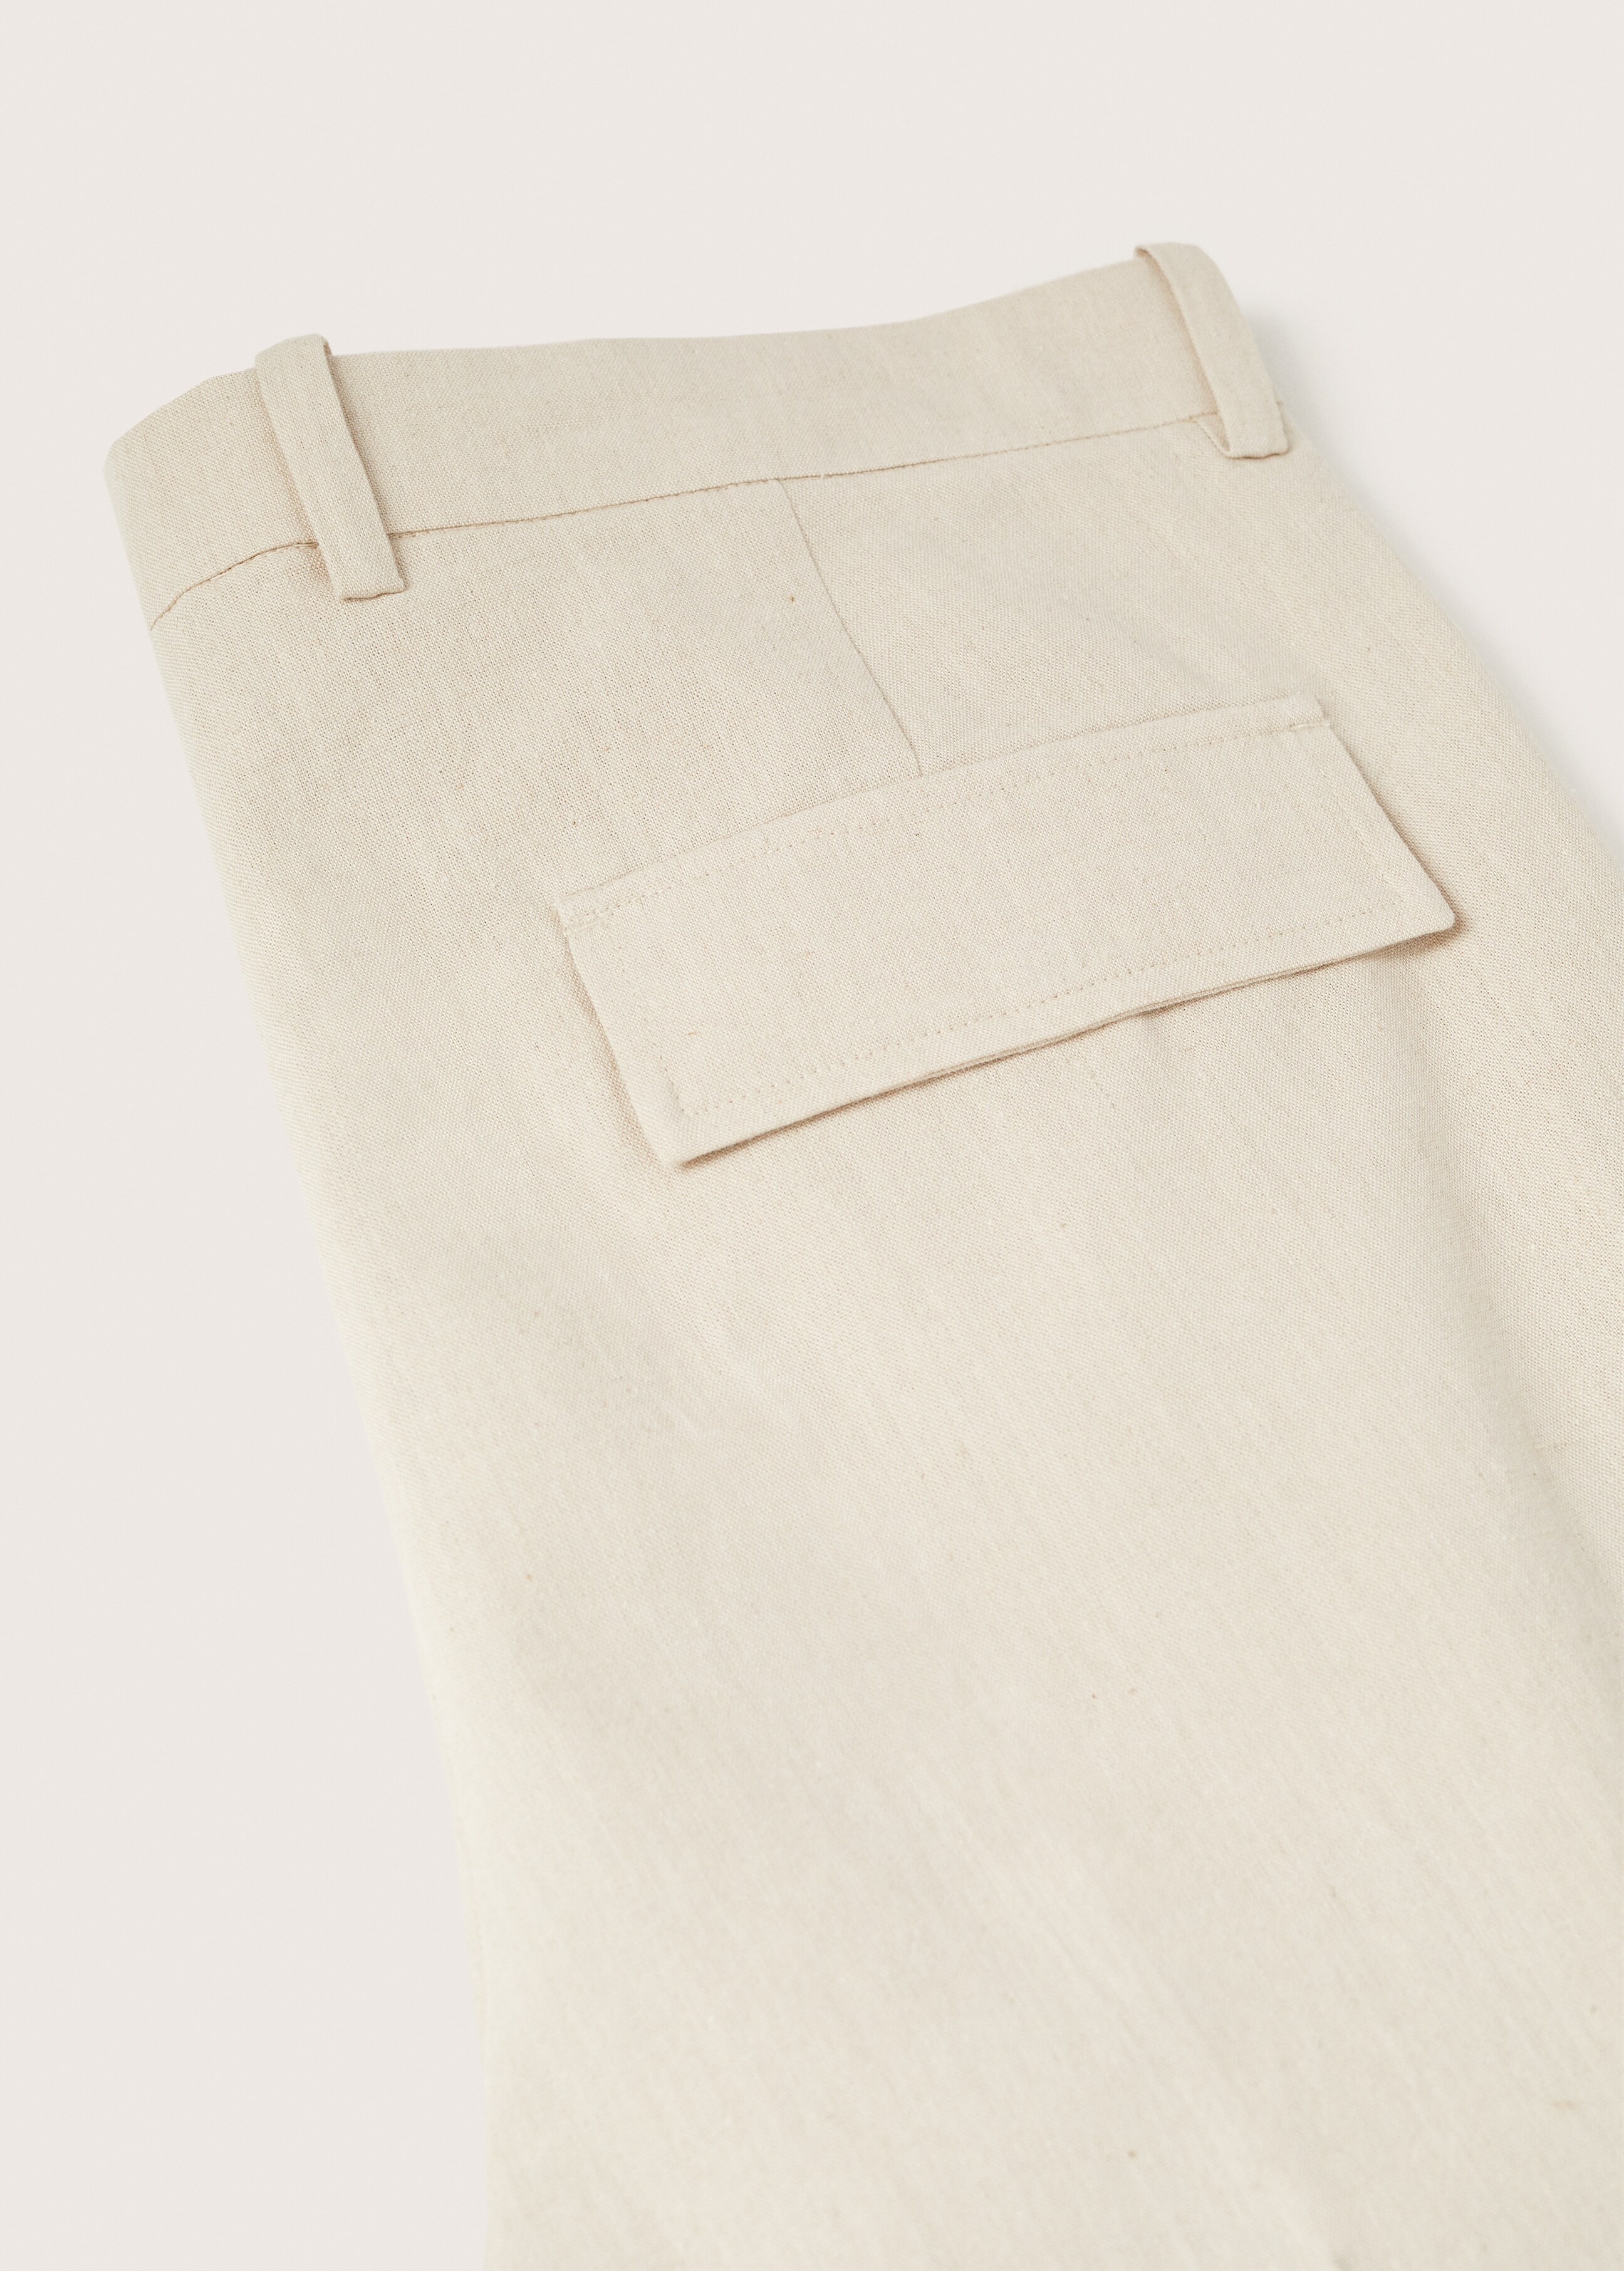 Pantalón lino algodón - Detalle del artículo 8